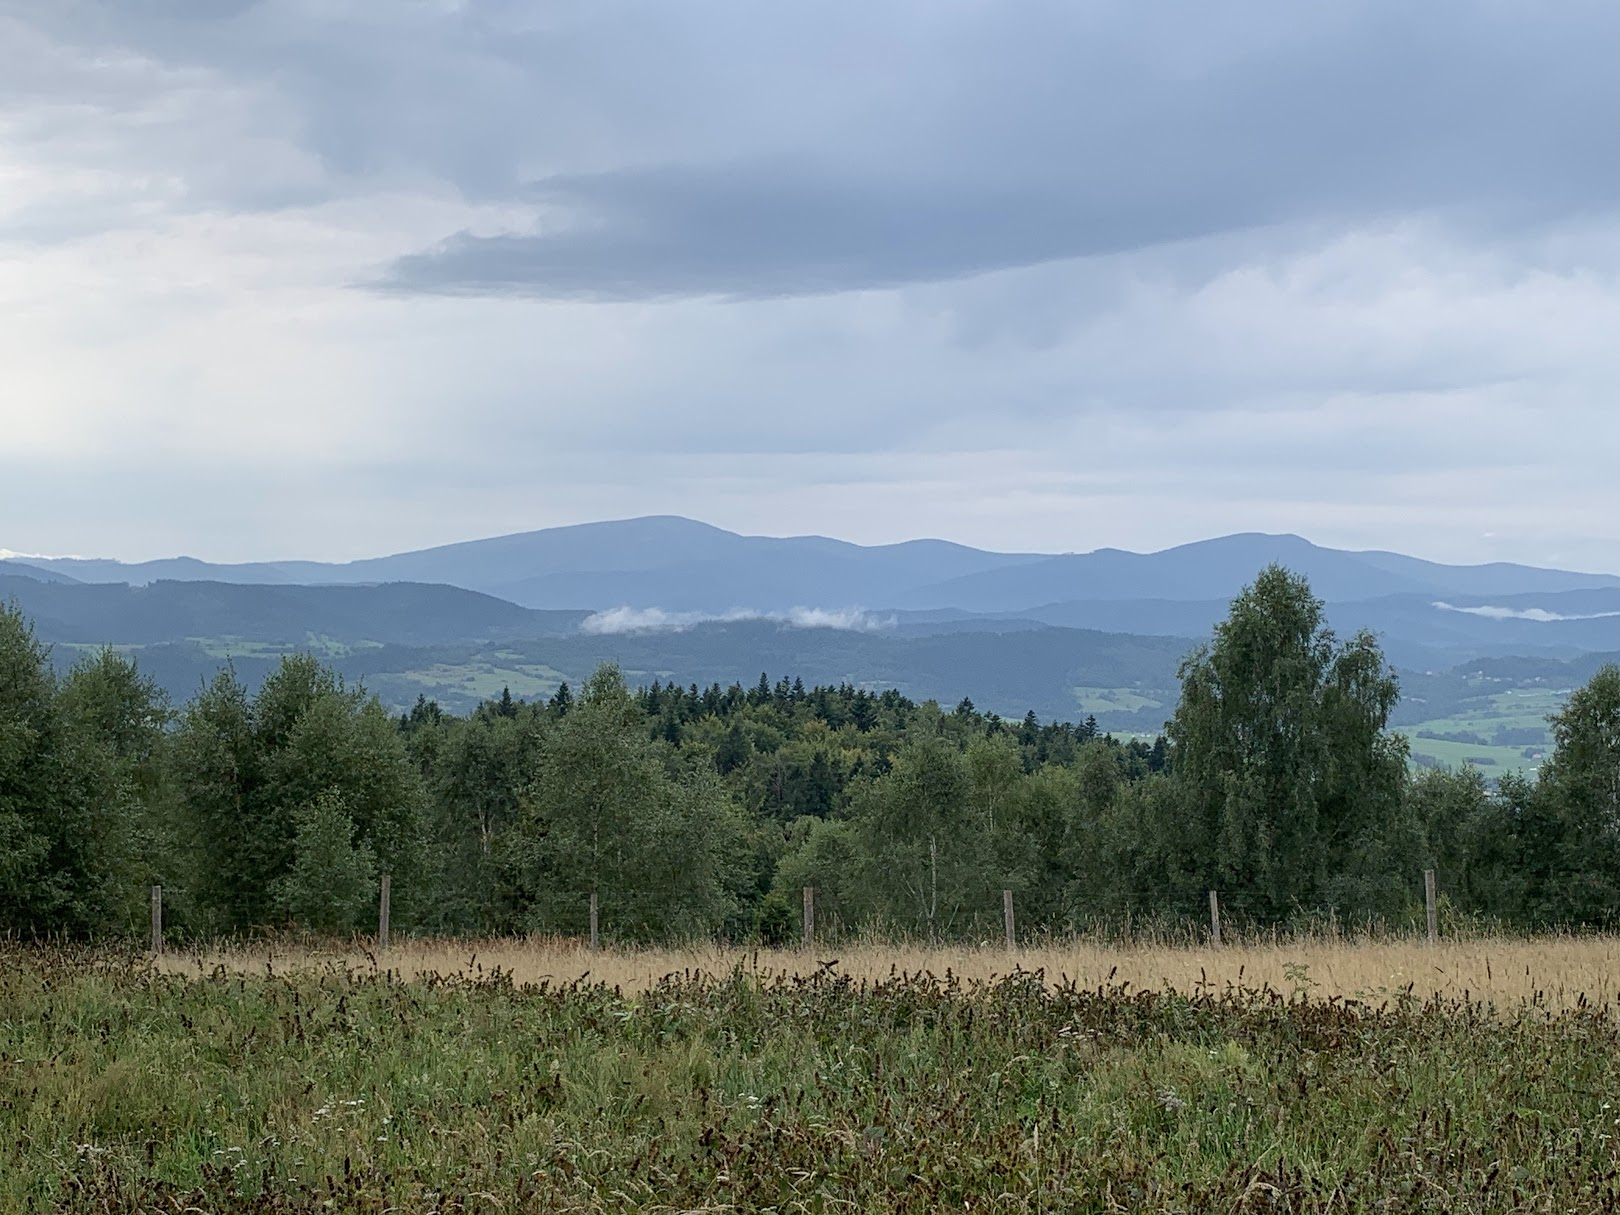 Widok z Łysiny. Dwa najwyższe widoczne szczyty to Polica (z lewej) oraz Jałowiec (z prawej).